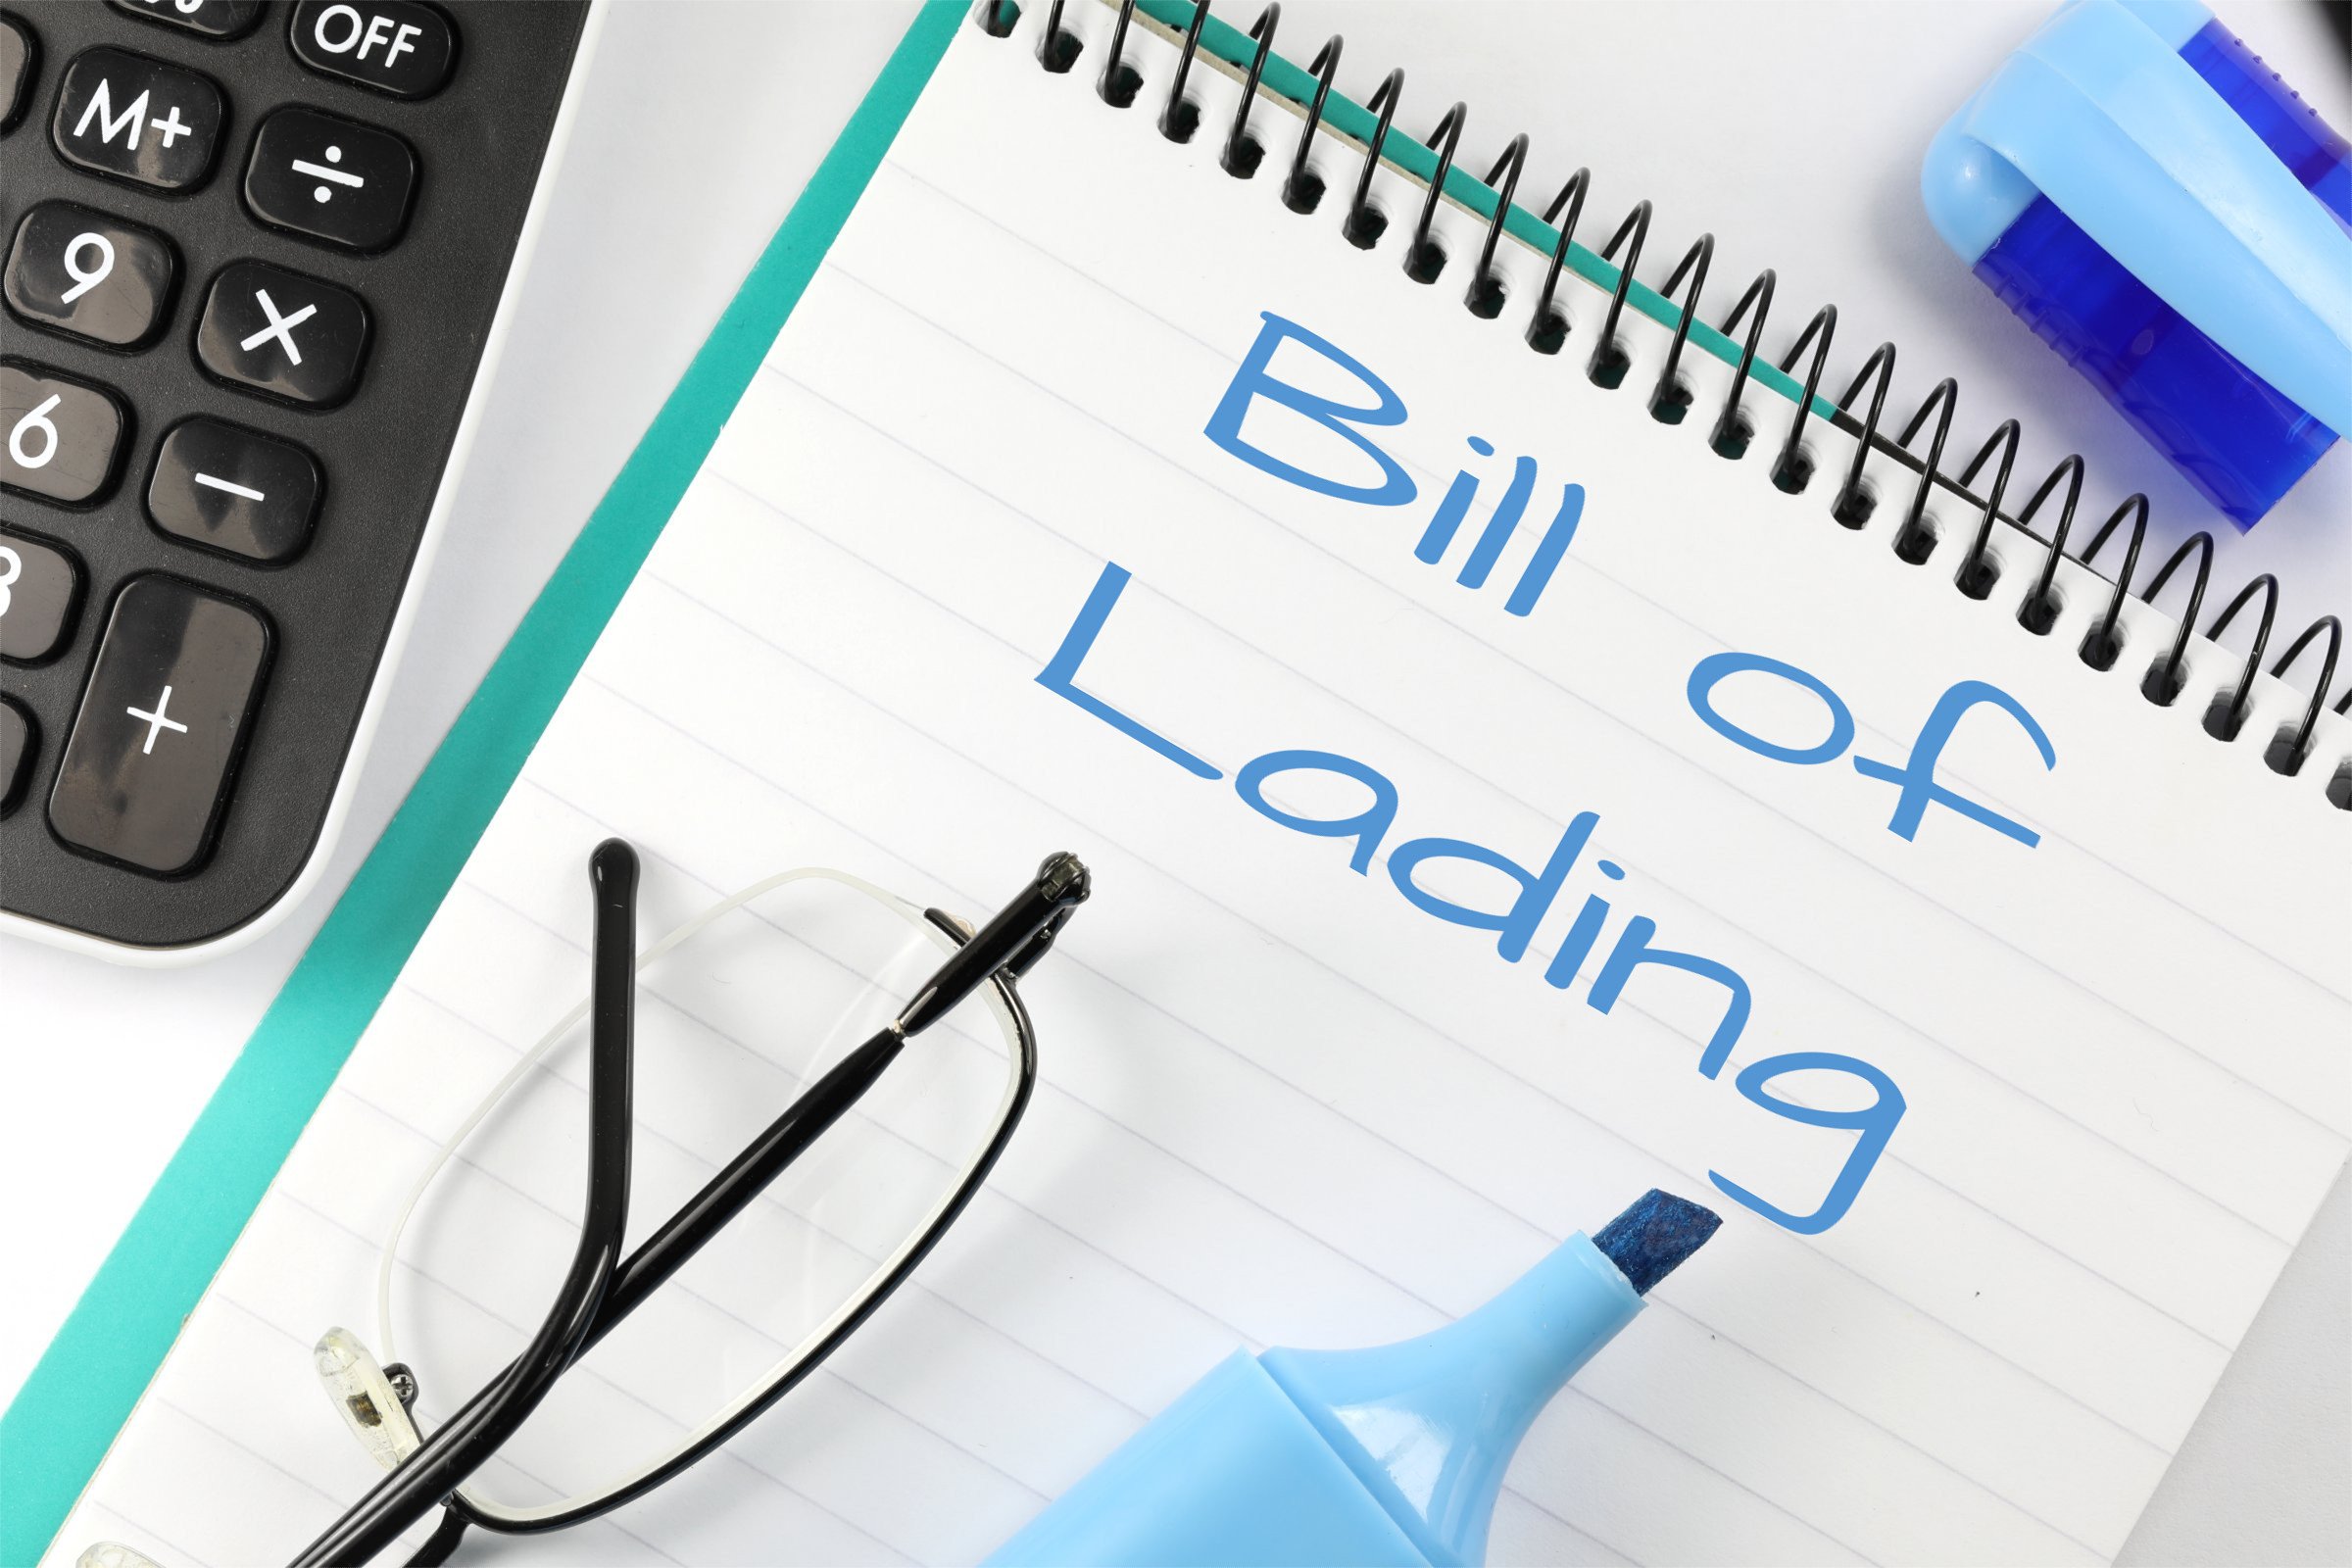 bill of lading